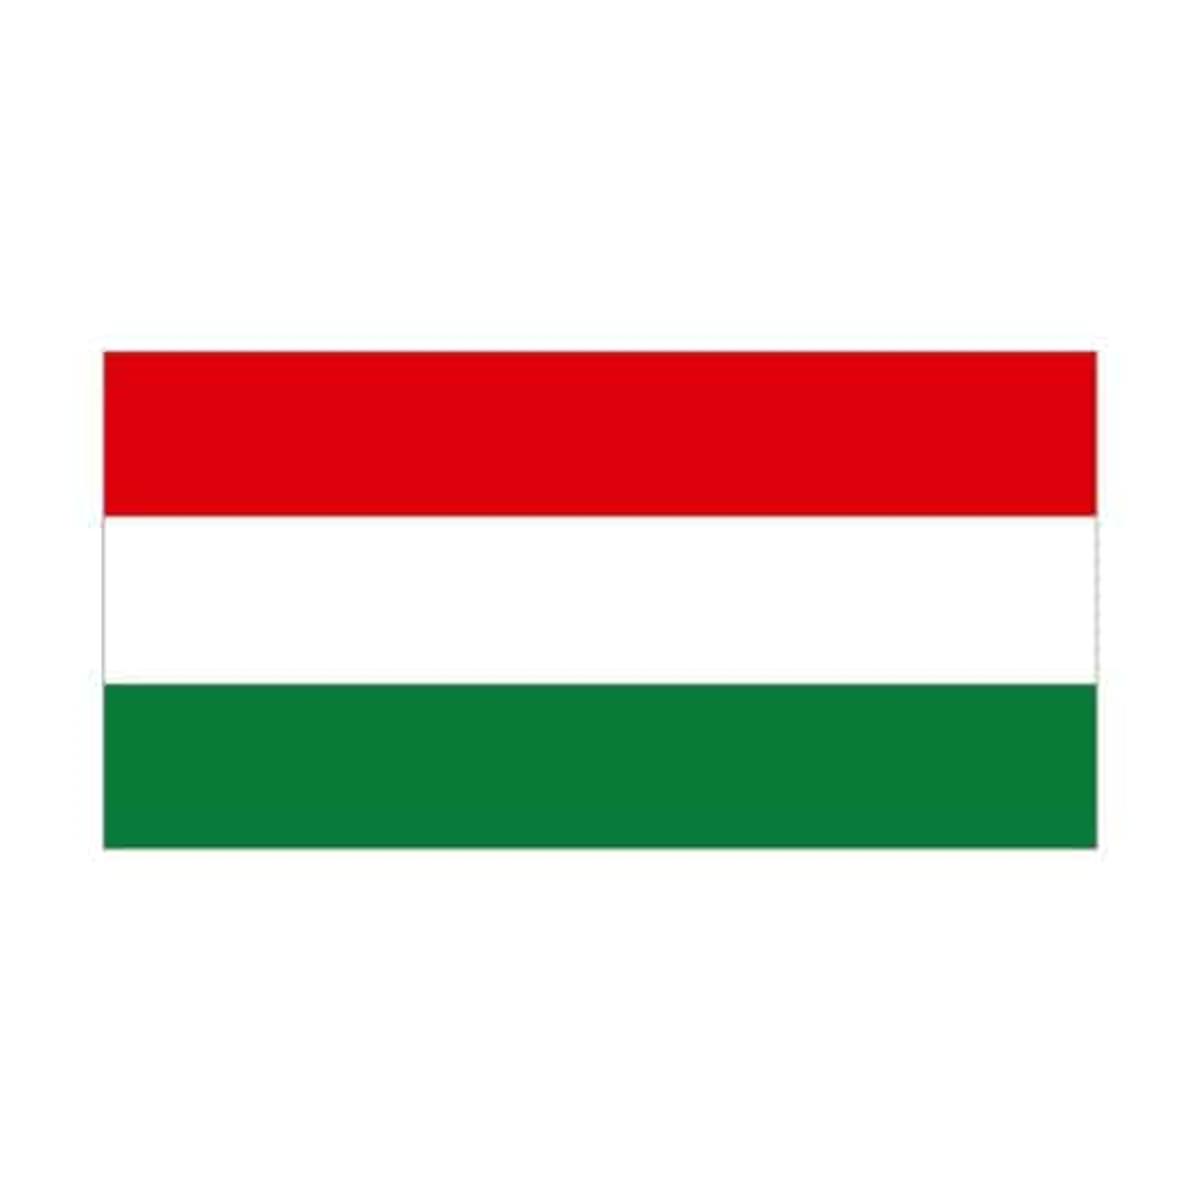 Hongaarse overheid neemt Kaspersky software onder de loep image